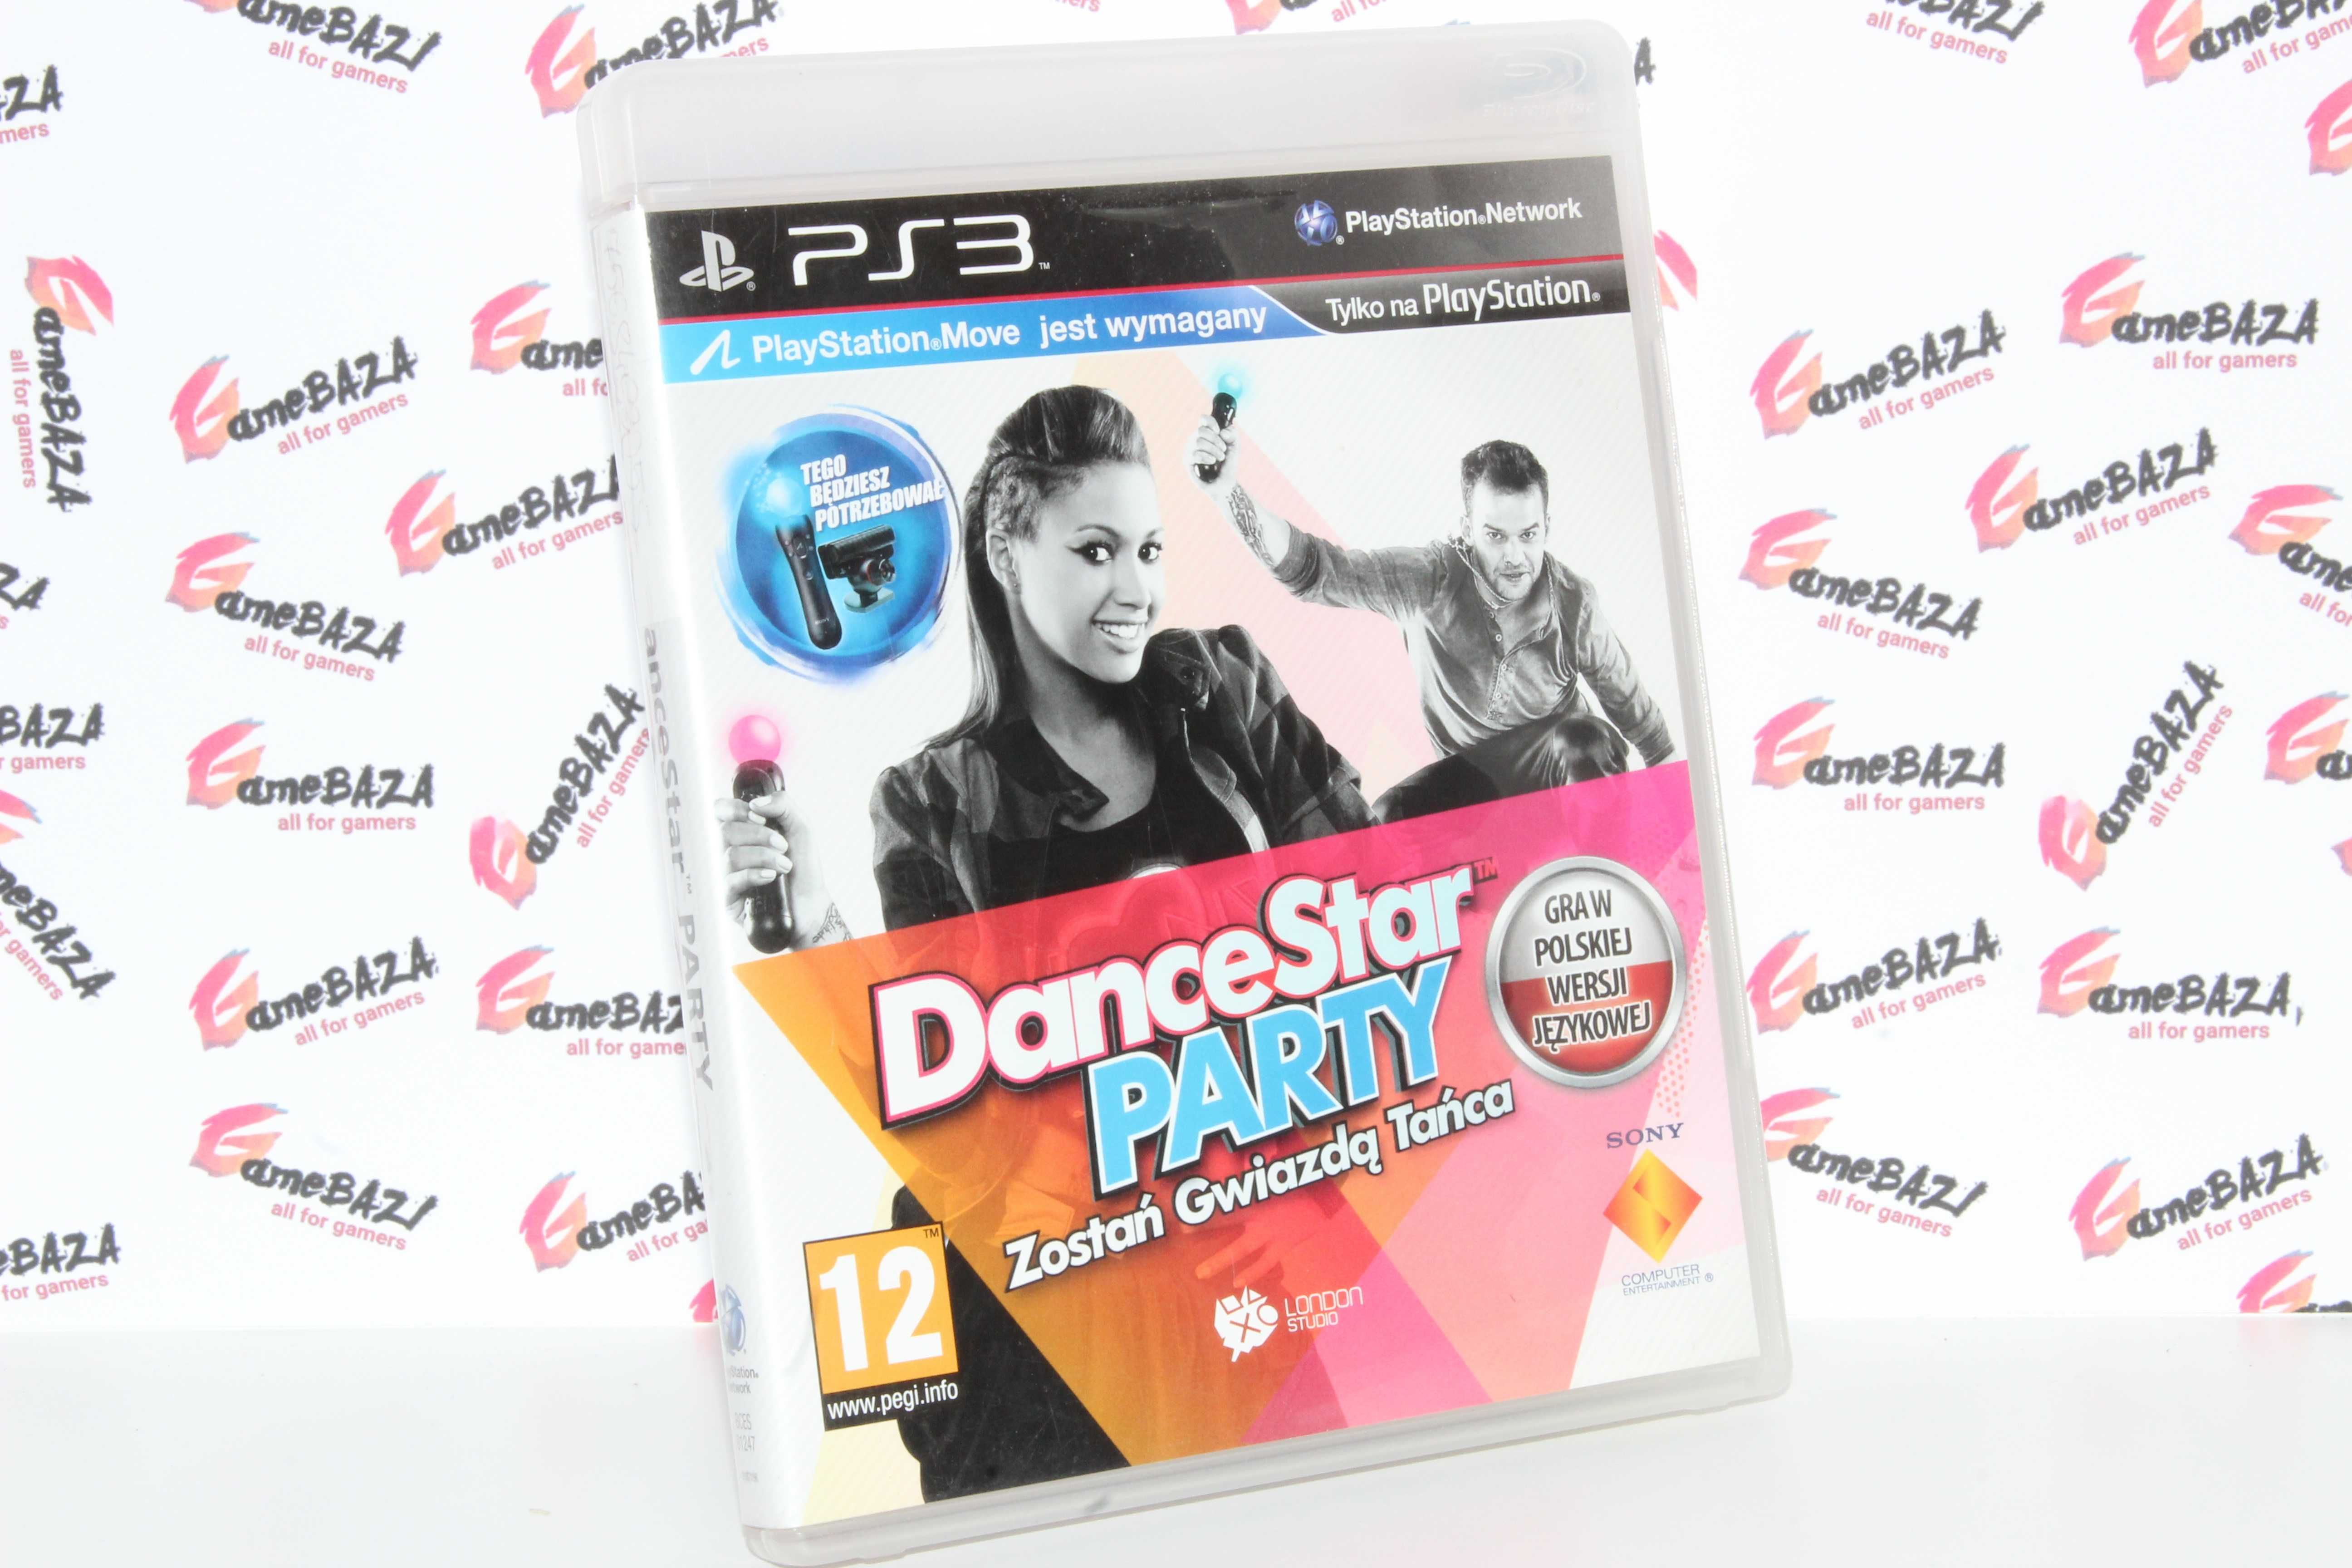 DanceStar Party: Zostań gwiazdą tańca PS3 GameBAZA